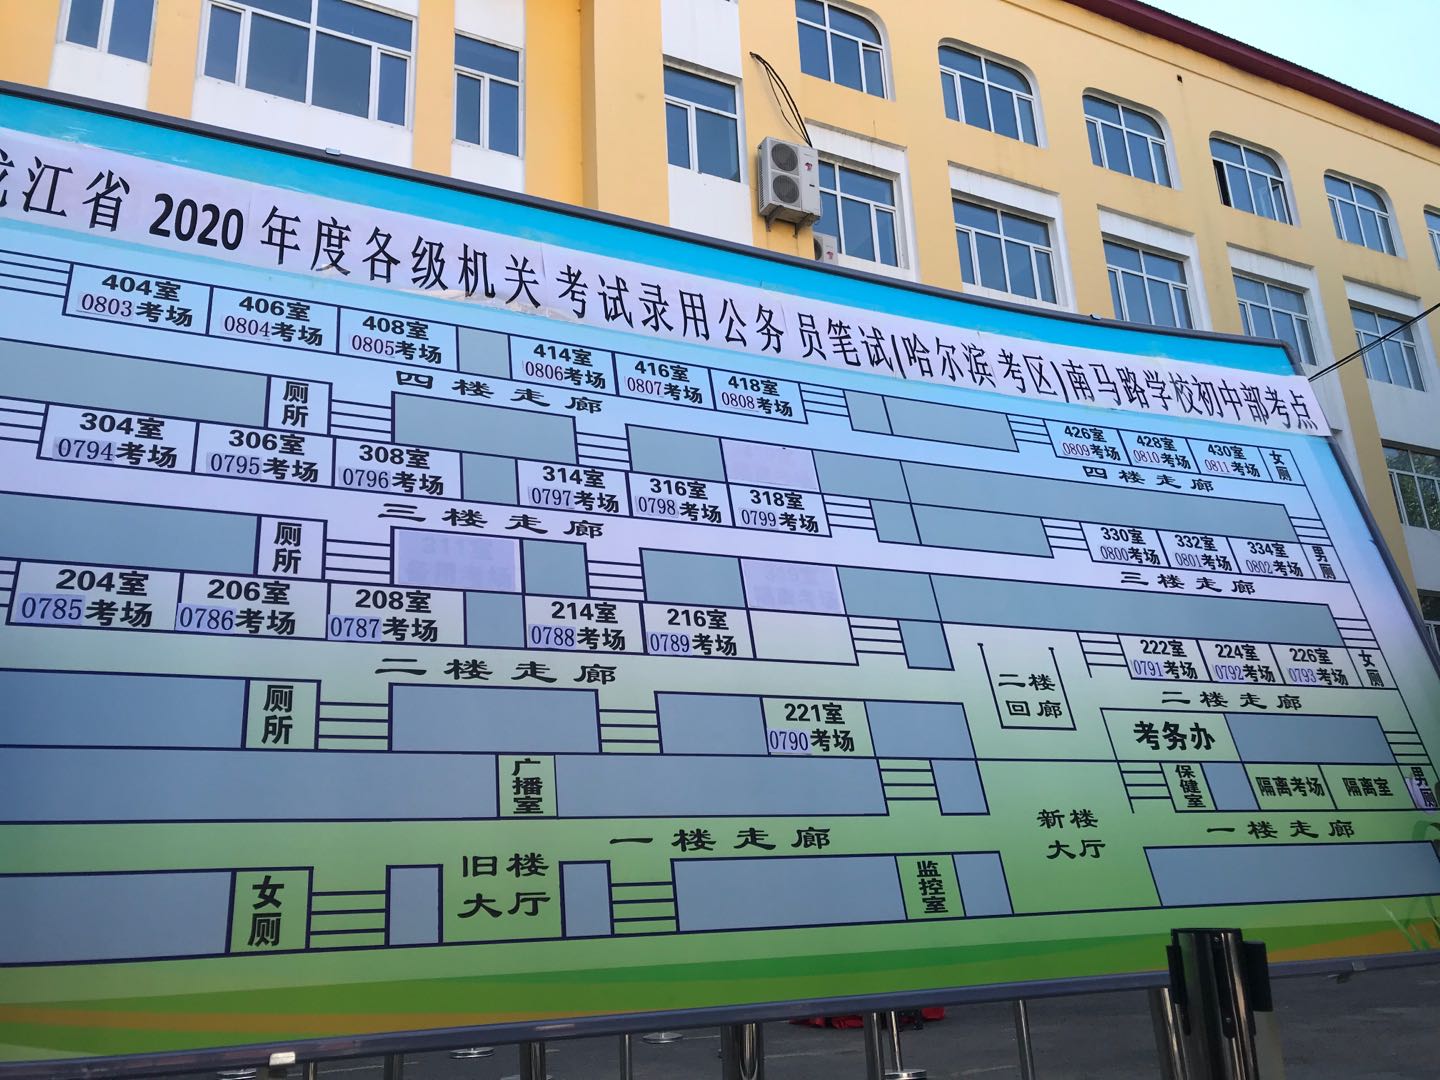 2020年黑龙江公务员考试考场分布图哈尔滨南马路学校初中部